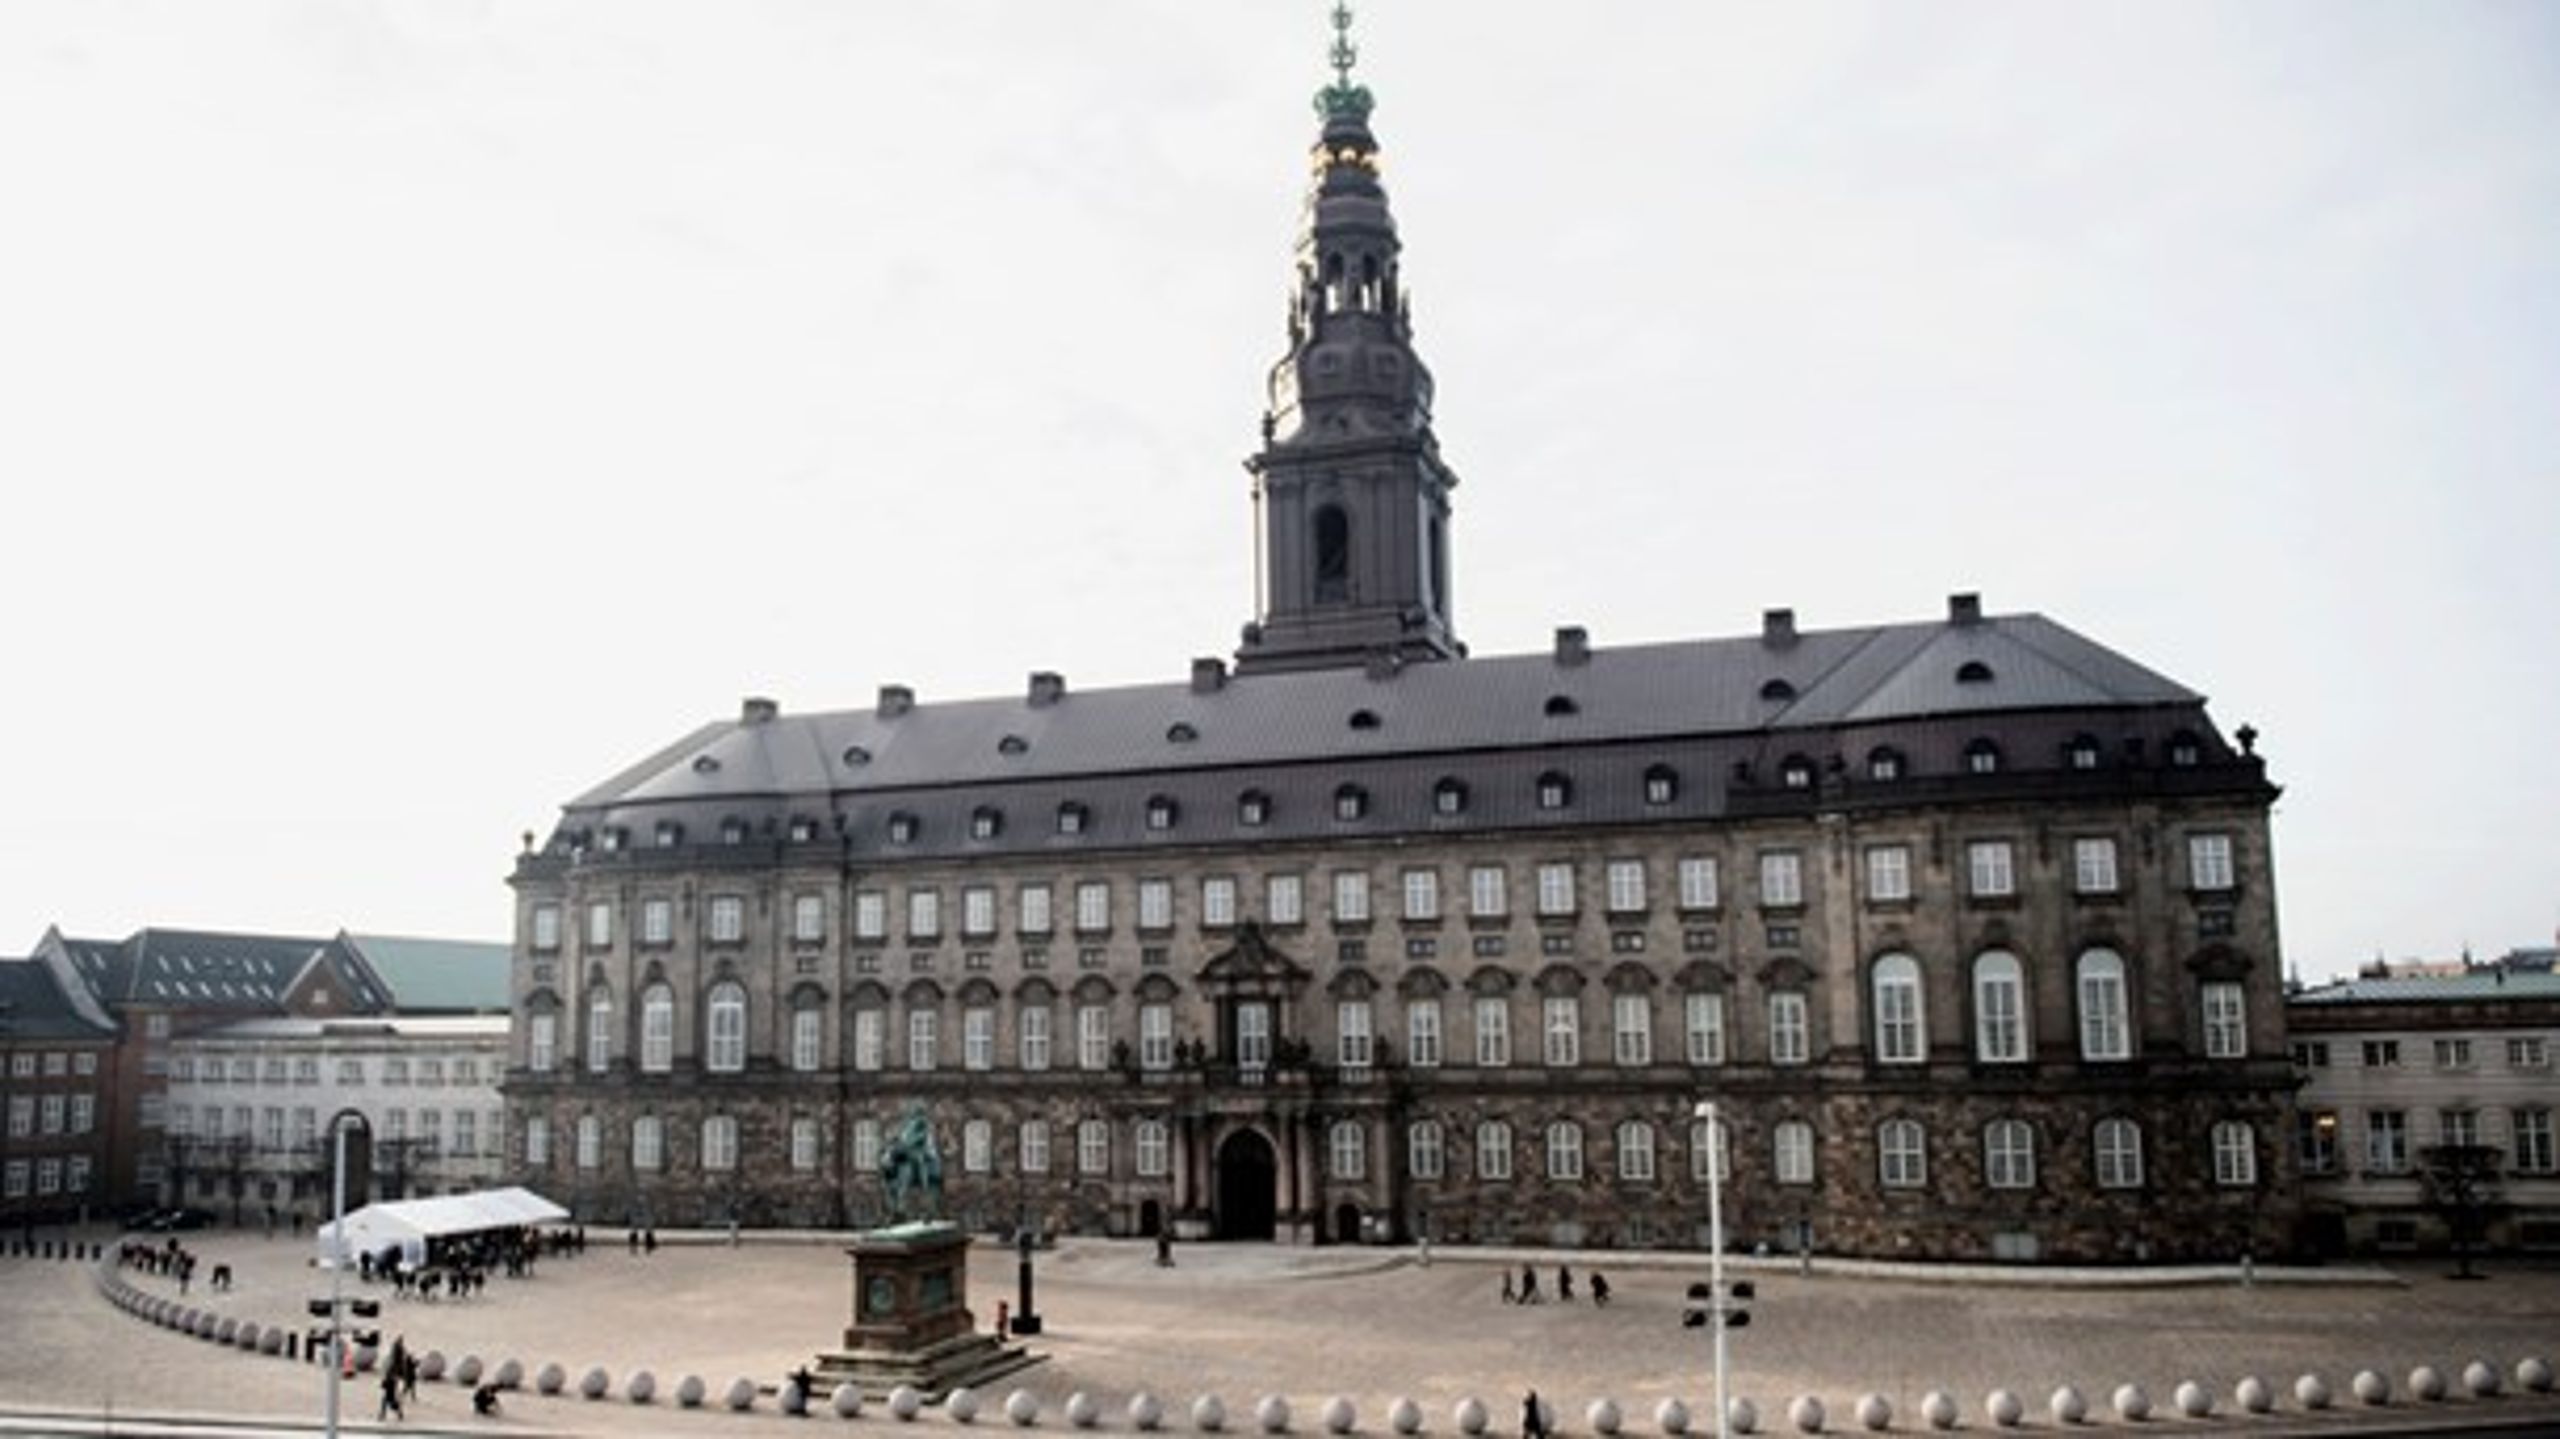 Folketinget kan snart få meget mere plads at boltre sig på. Rigsarkivet flytter fra sine bygninger på Slotsholmen næste år, og det kan komme politikere, embedsfolk og besøgende til gode.